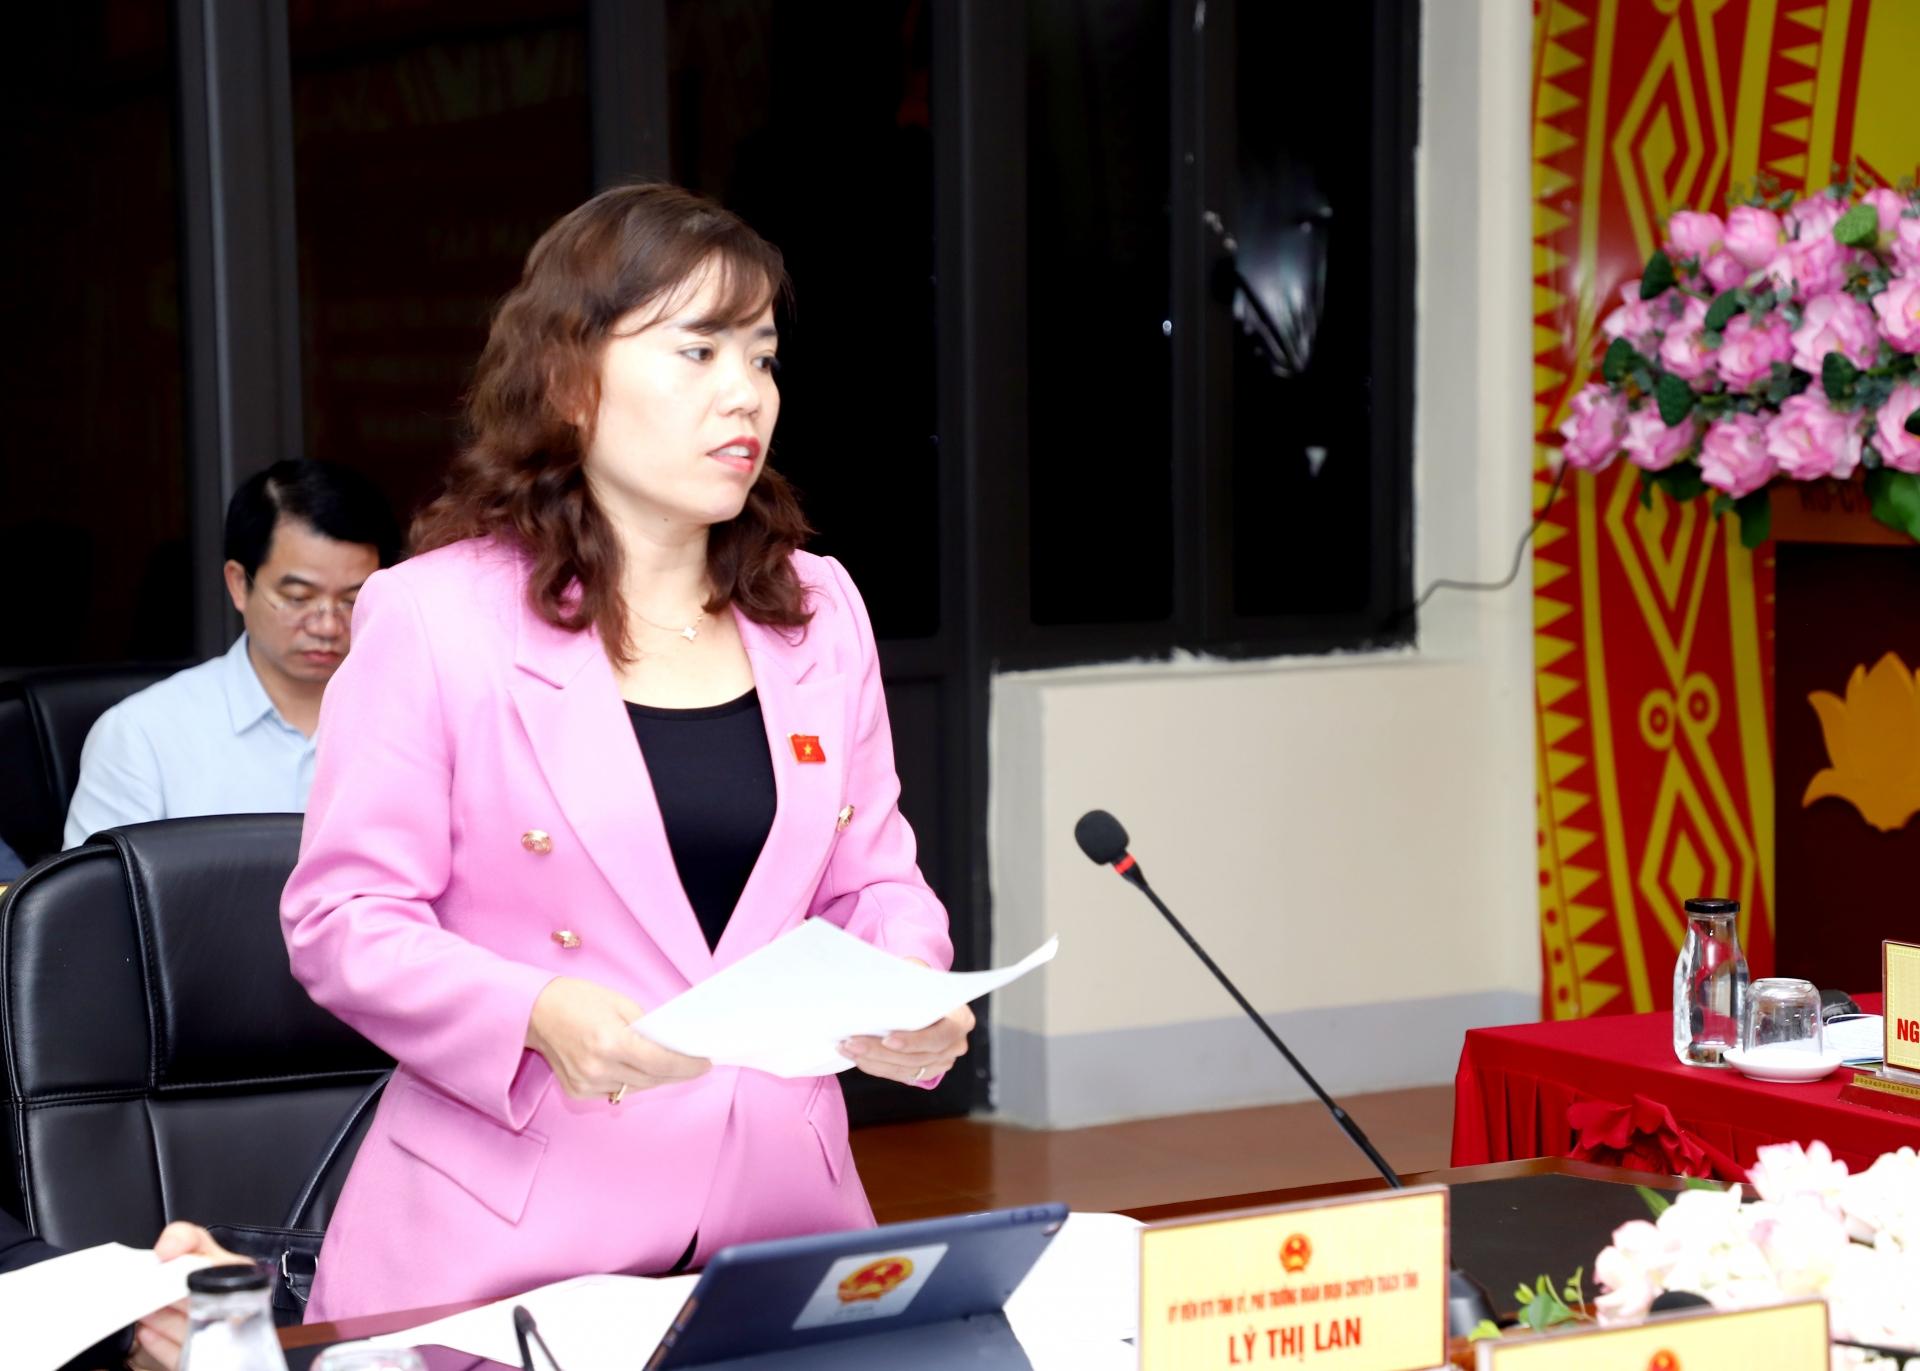 Phó trưởng đoàn chuyên trách Đoàn ĐBQH khóa XV đơn vị tỉnh Hà Giang Lý Thị Lan tham gia ý kiến tại buổi giám sát